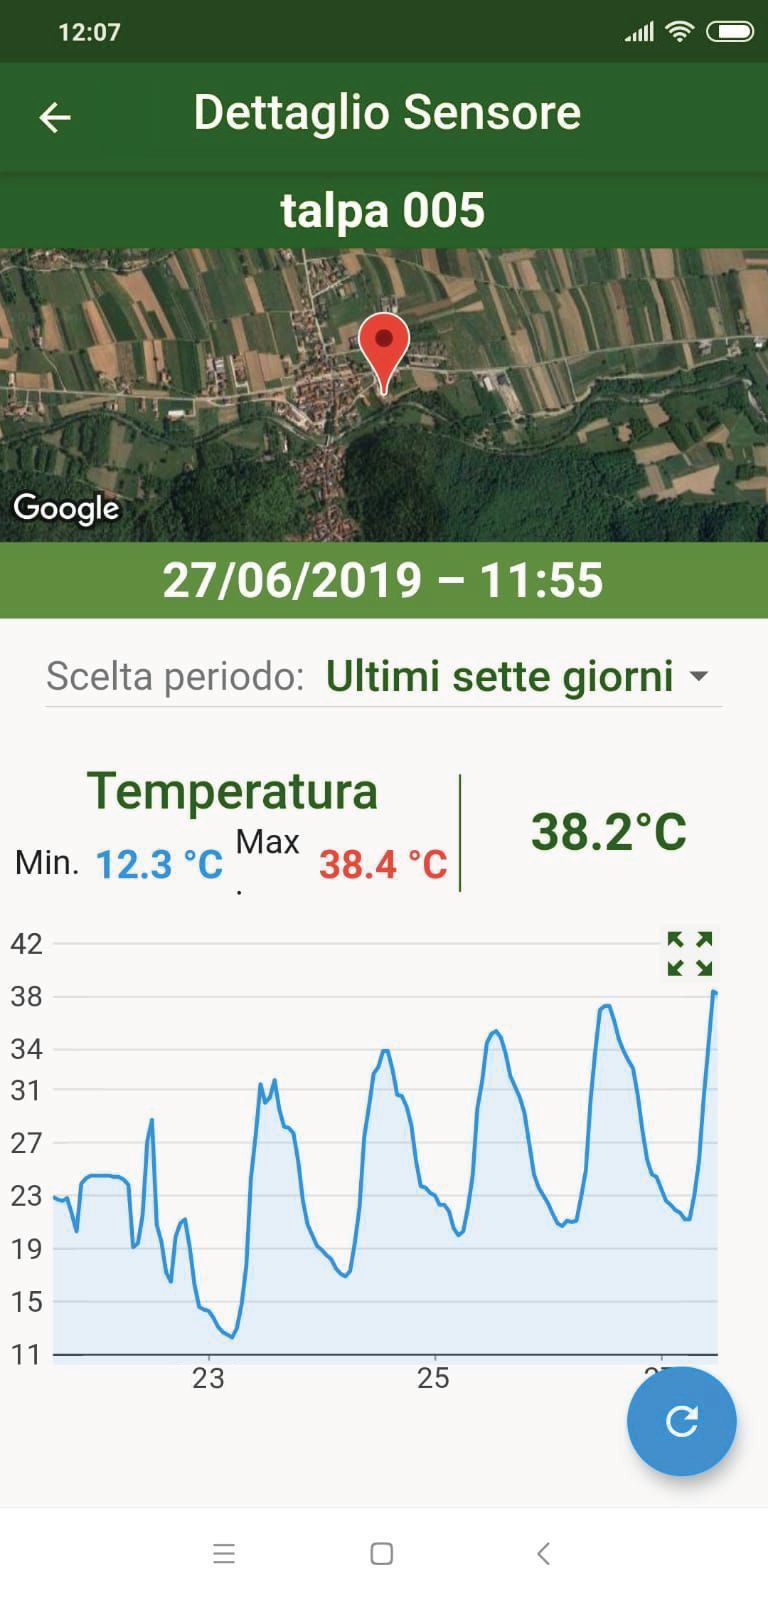 TALPA APP - Settimana record dei valori di temperatura in Italia